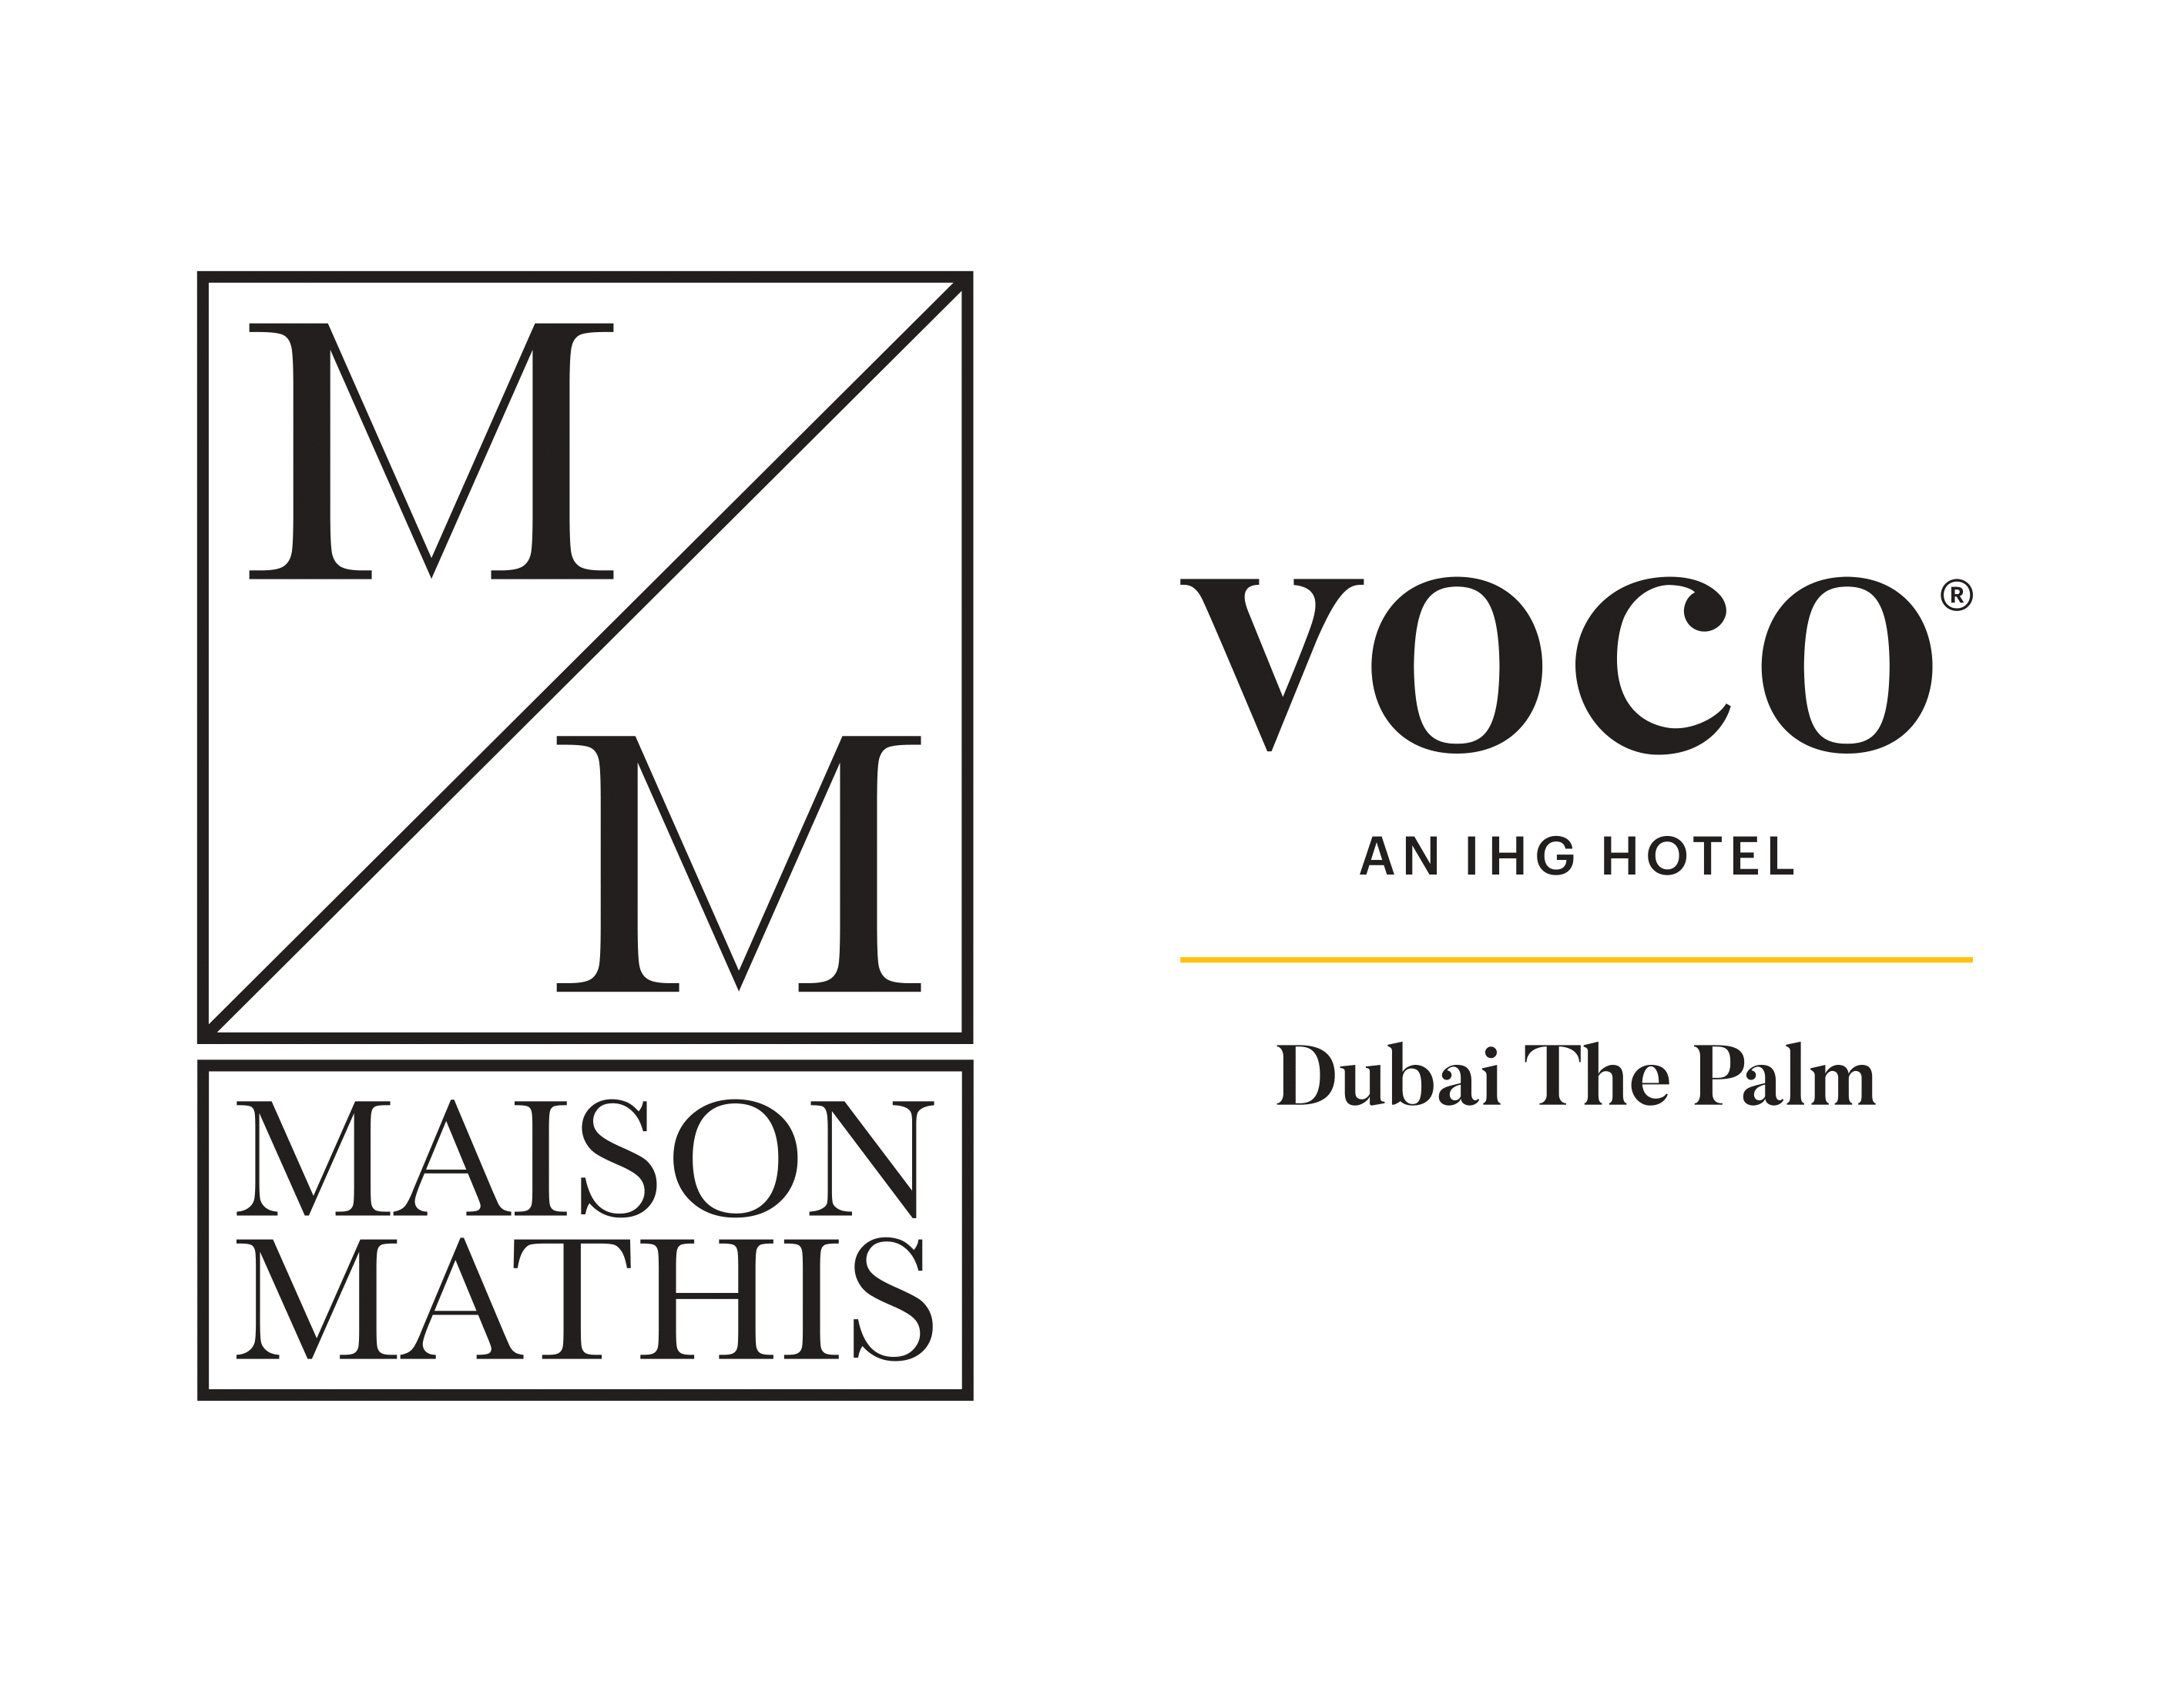 Maison Mathis voco - Dubai The Palm